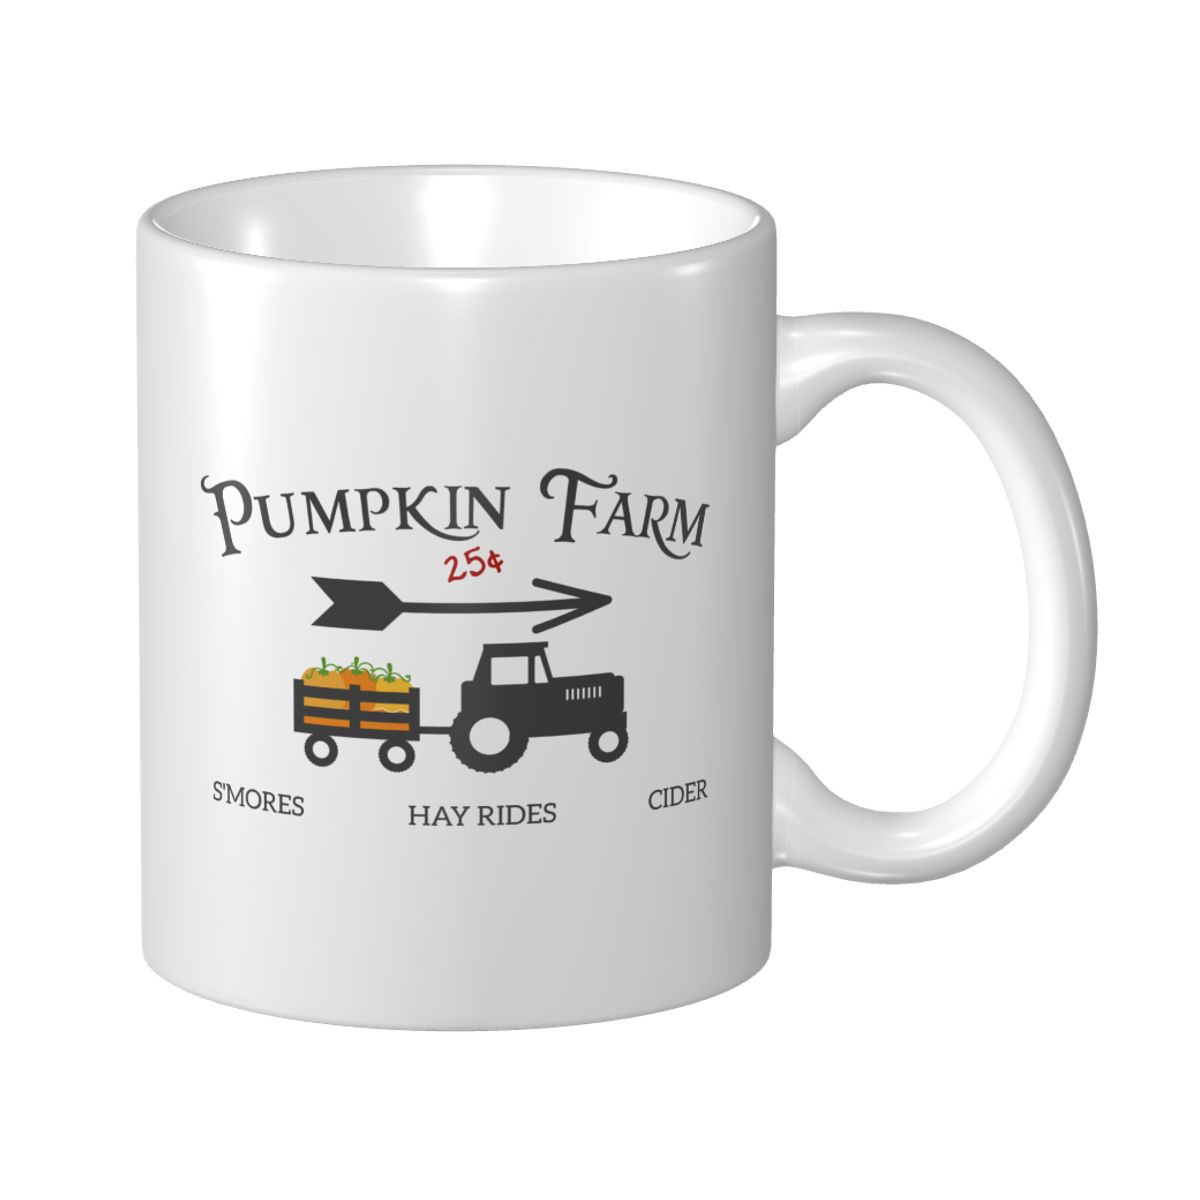 Pumpkin Farm Ceramic Mug